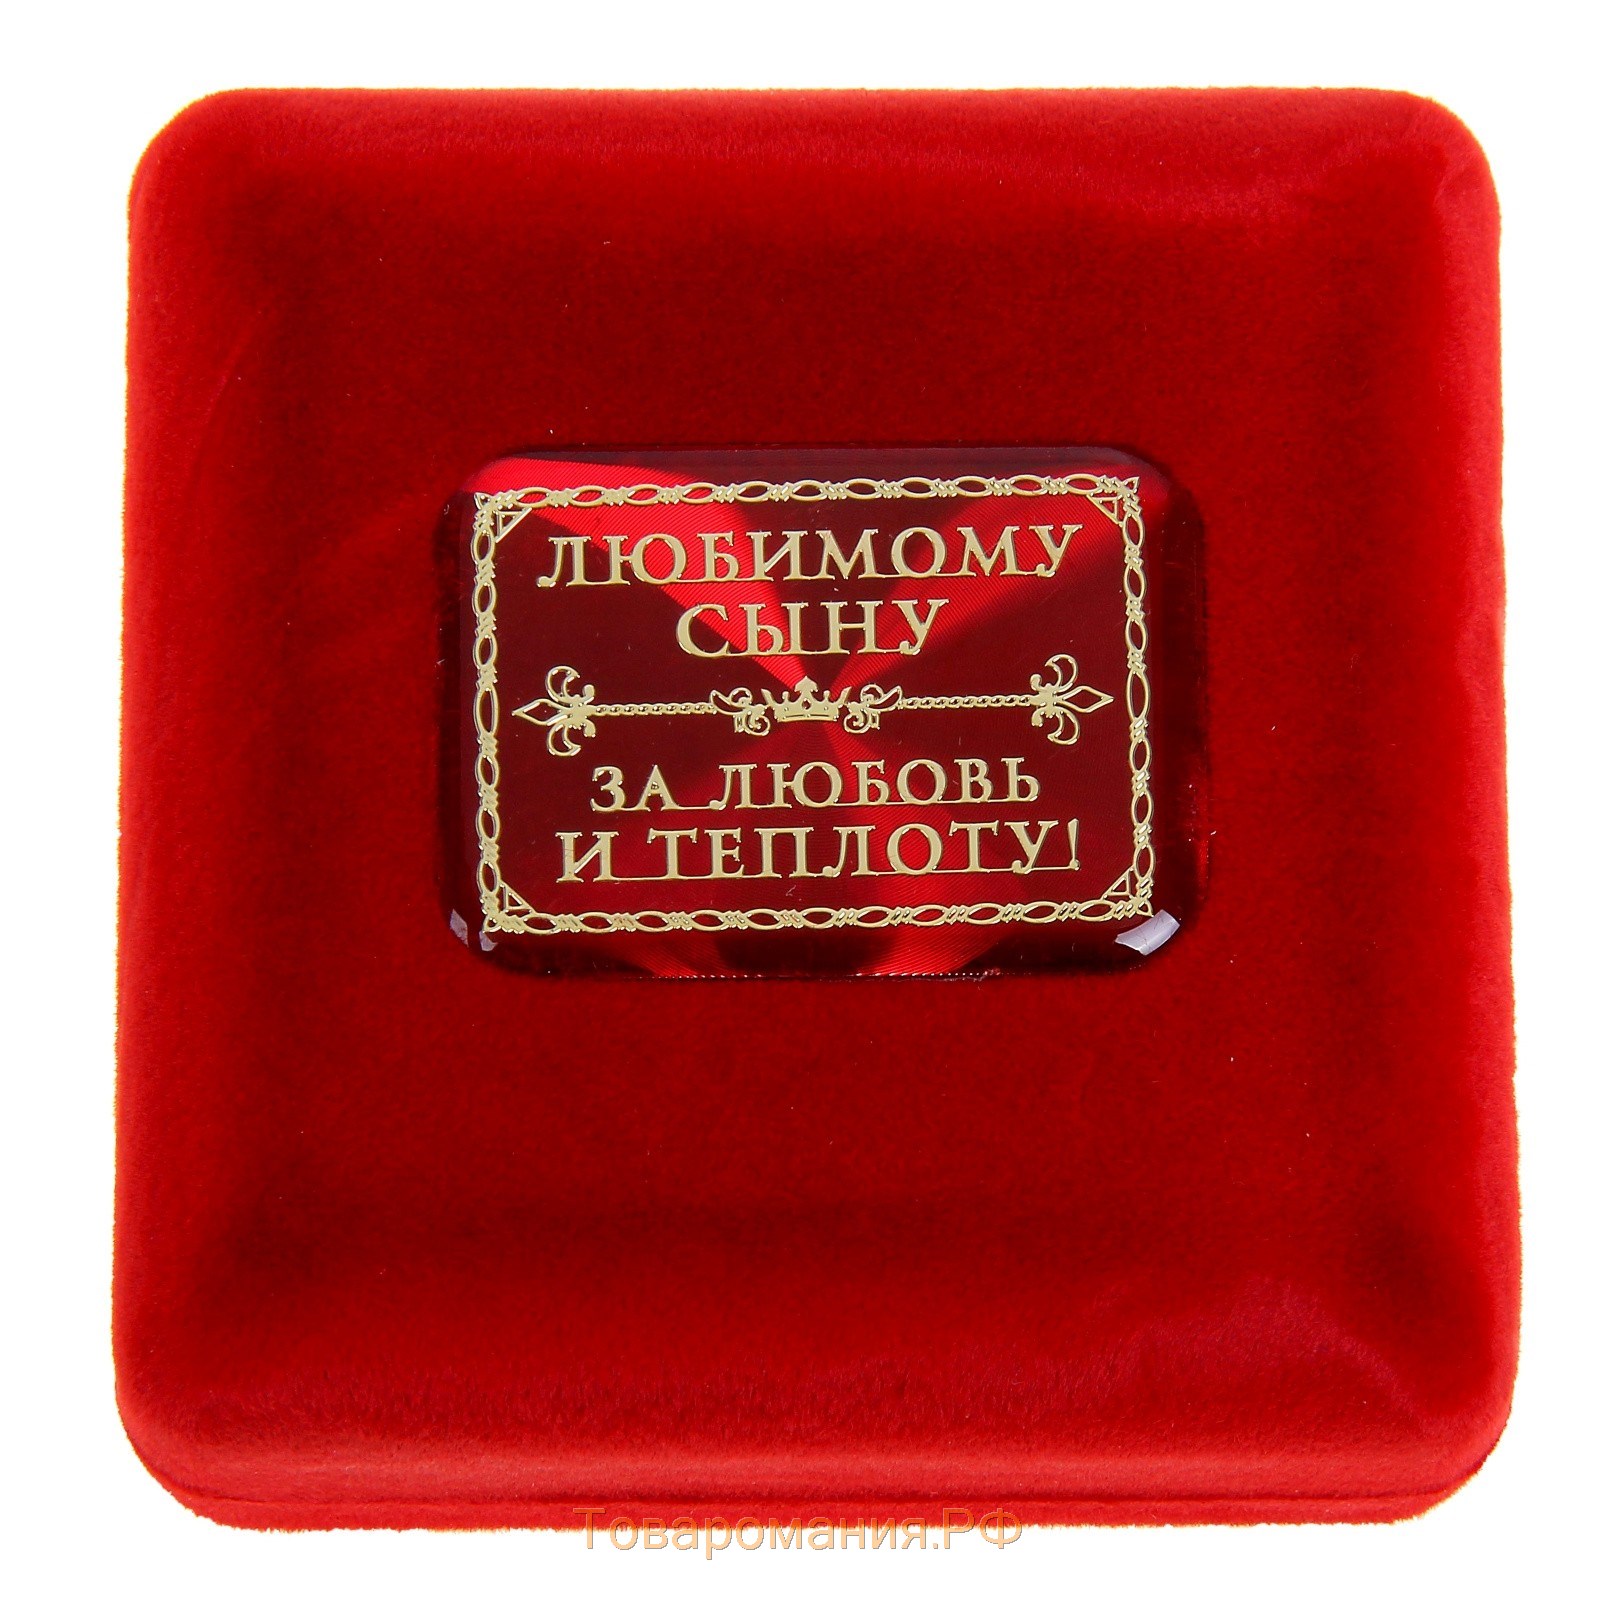 Медаль в бархатной коробке "Золотой сын"